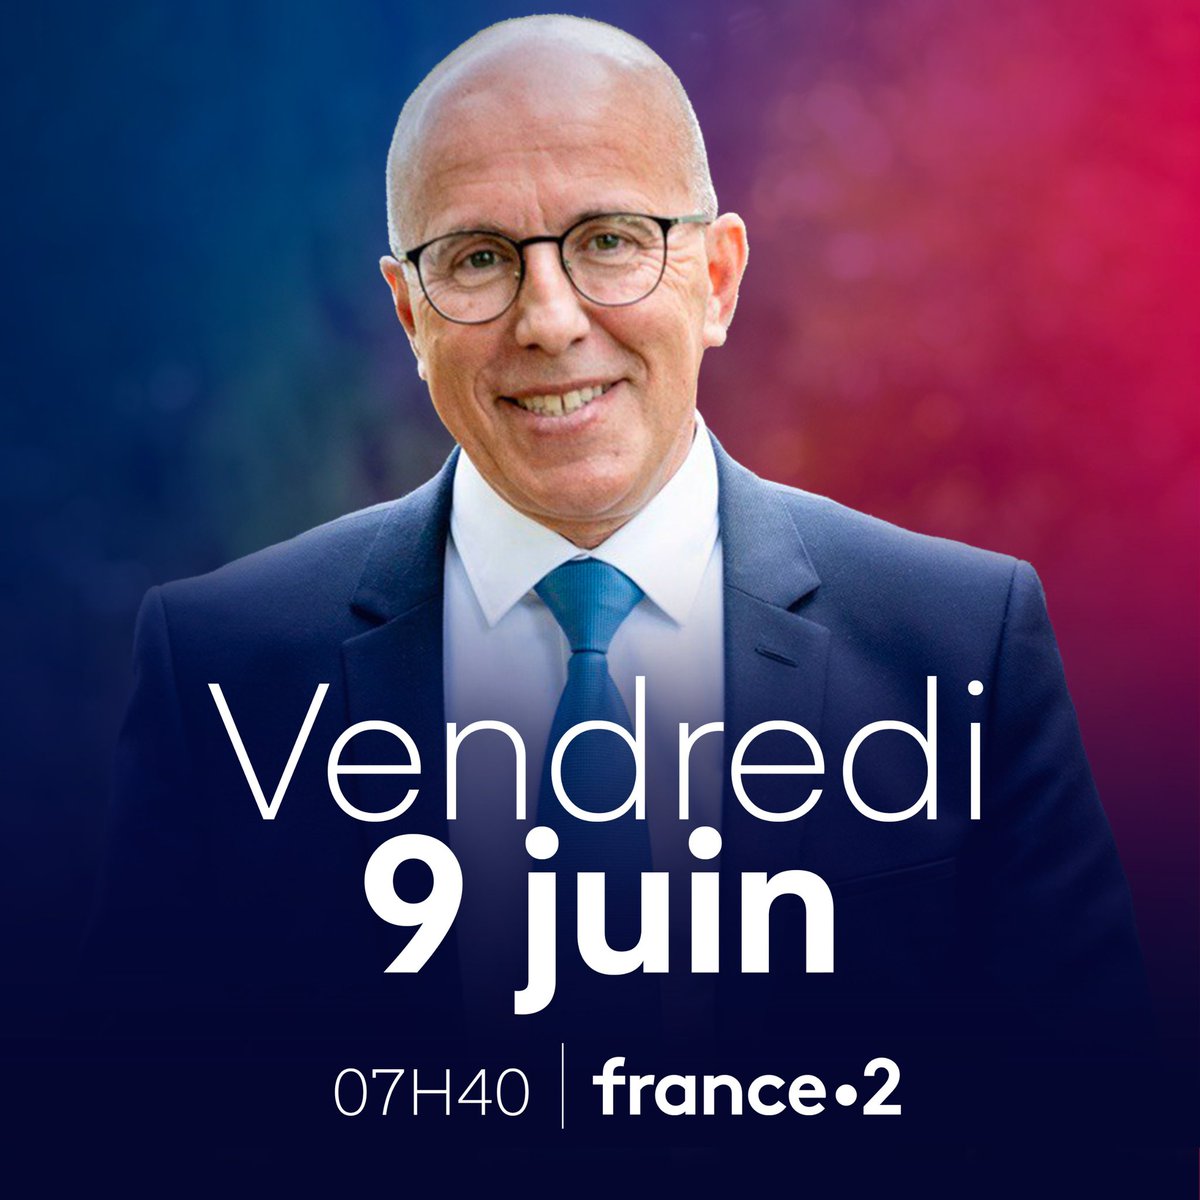 Retrouvez-moi demain matin à 7H40 sur @France2tv, je serai l’invité des #4Vérités